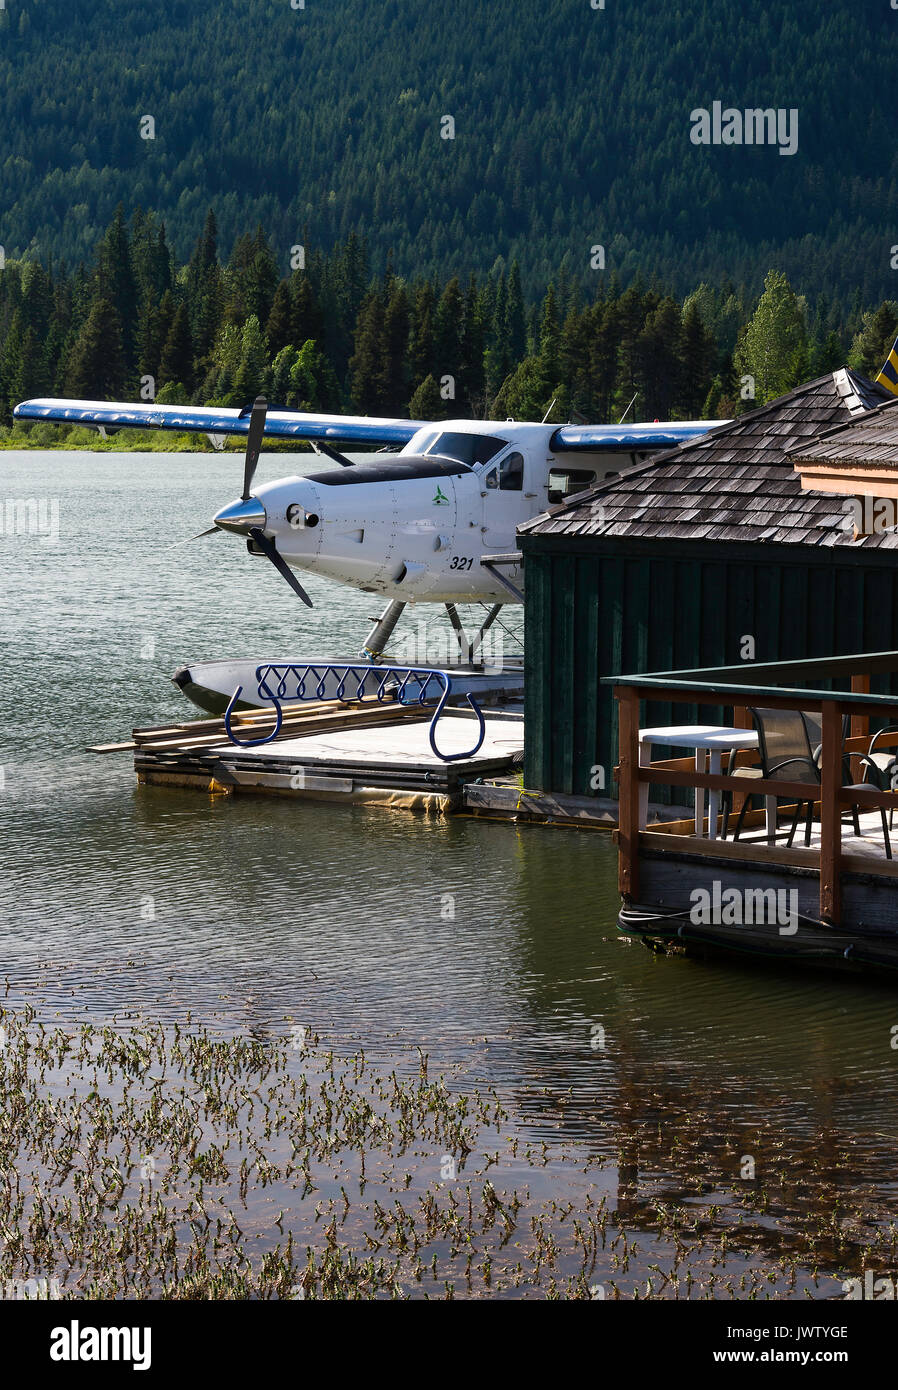 Whistler, Bayerische Flugzeugwerke Bf Canada DHC-3 Otter Turbine Wasserflugzeug festgebunden an einen Steg am grünen See Whistler British Columbia Kanada Stockfoto